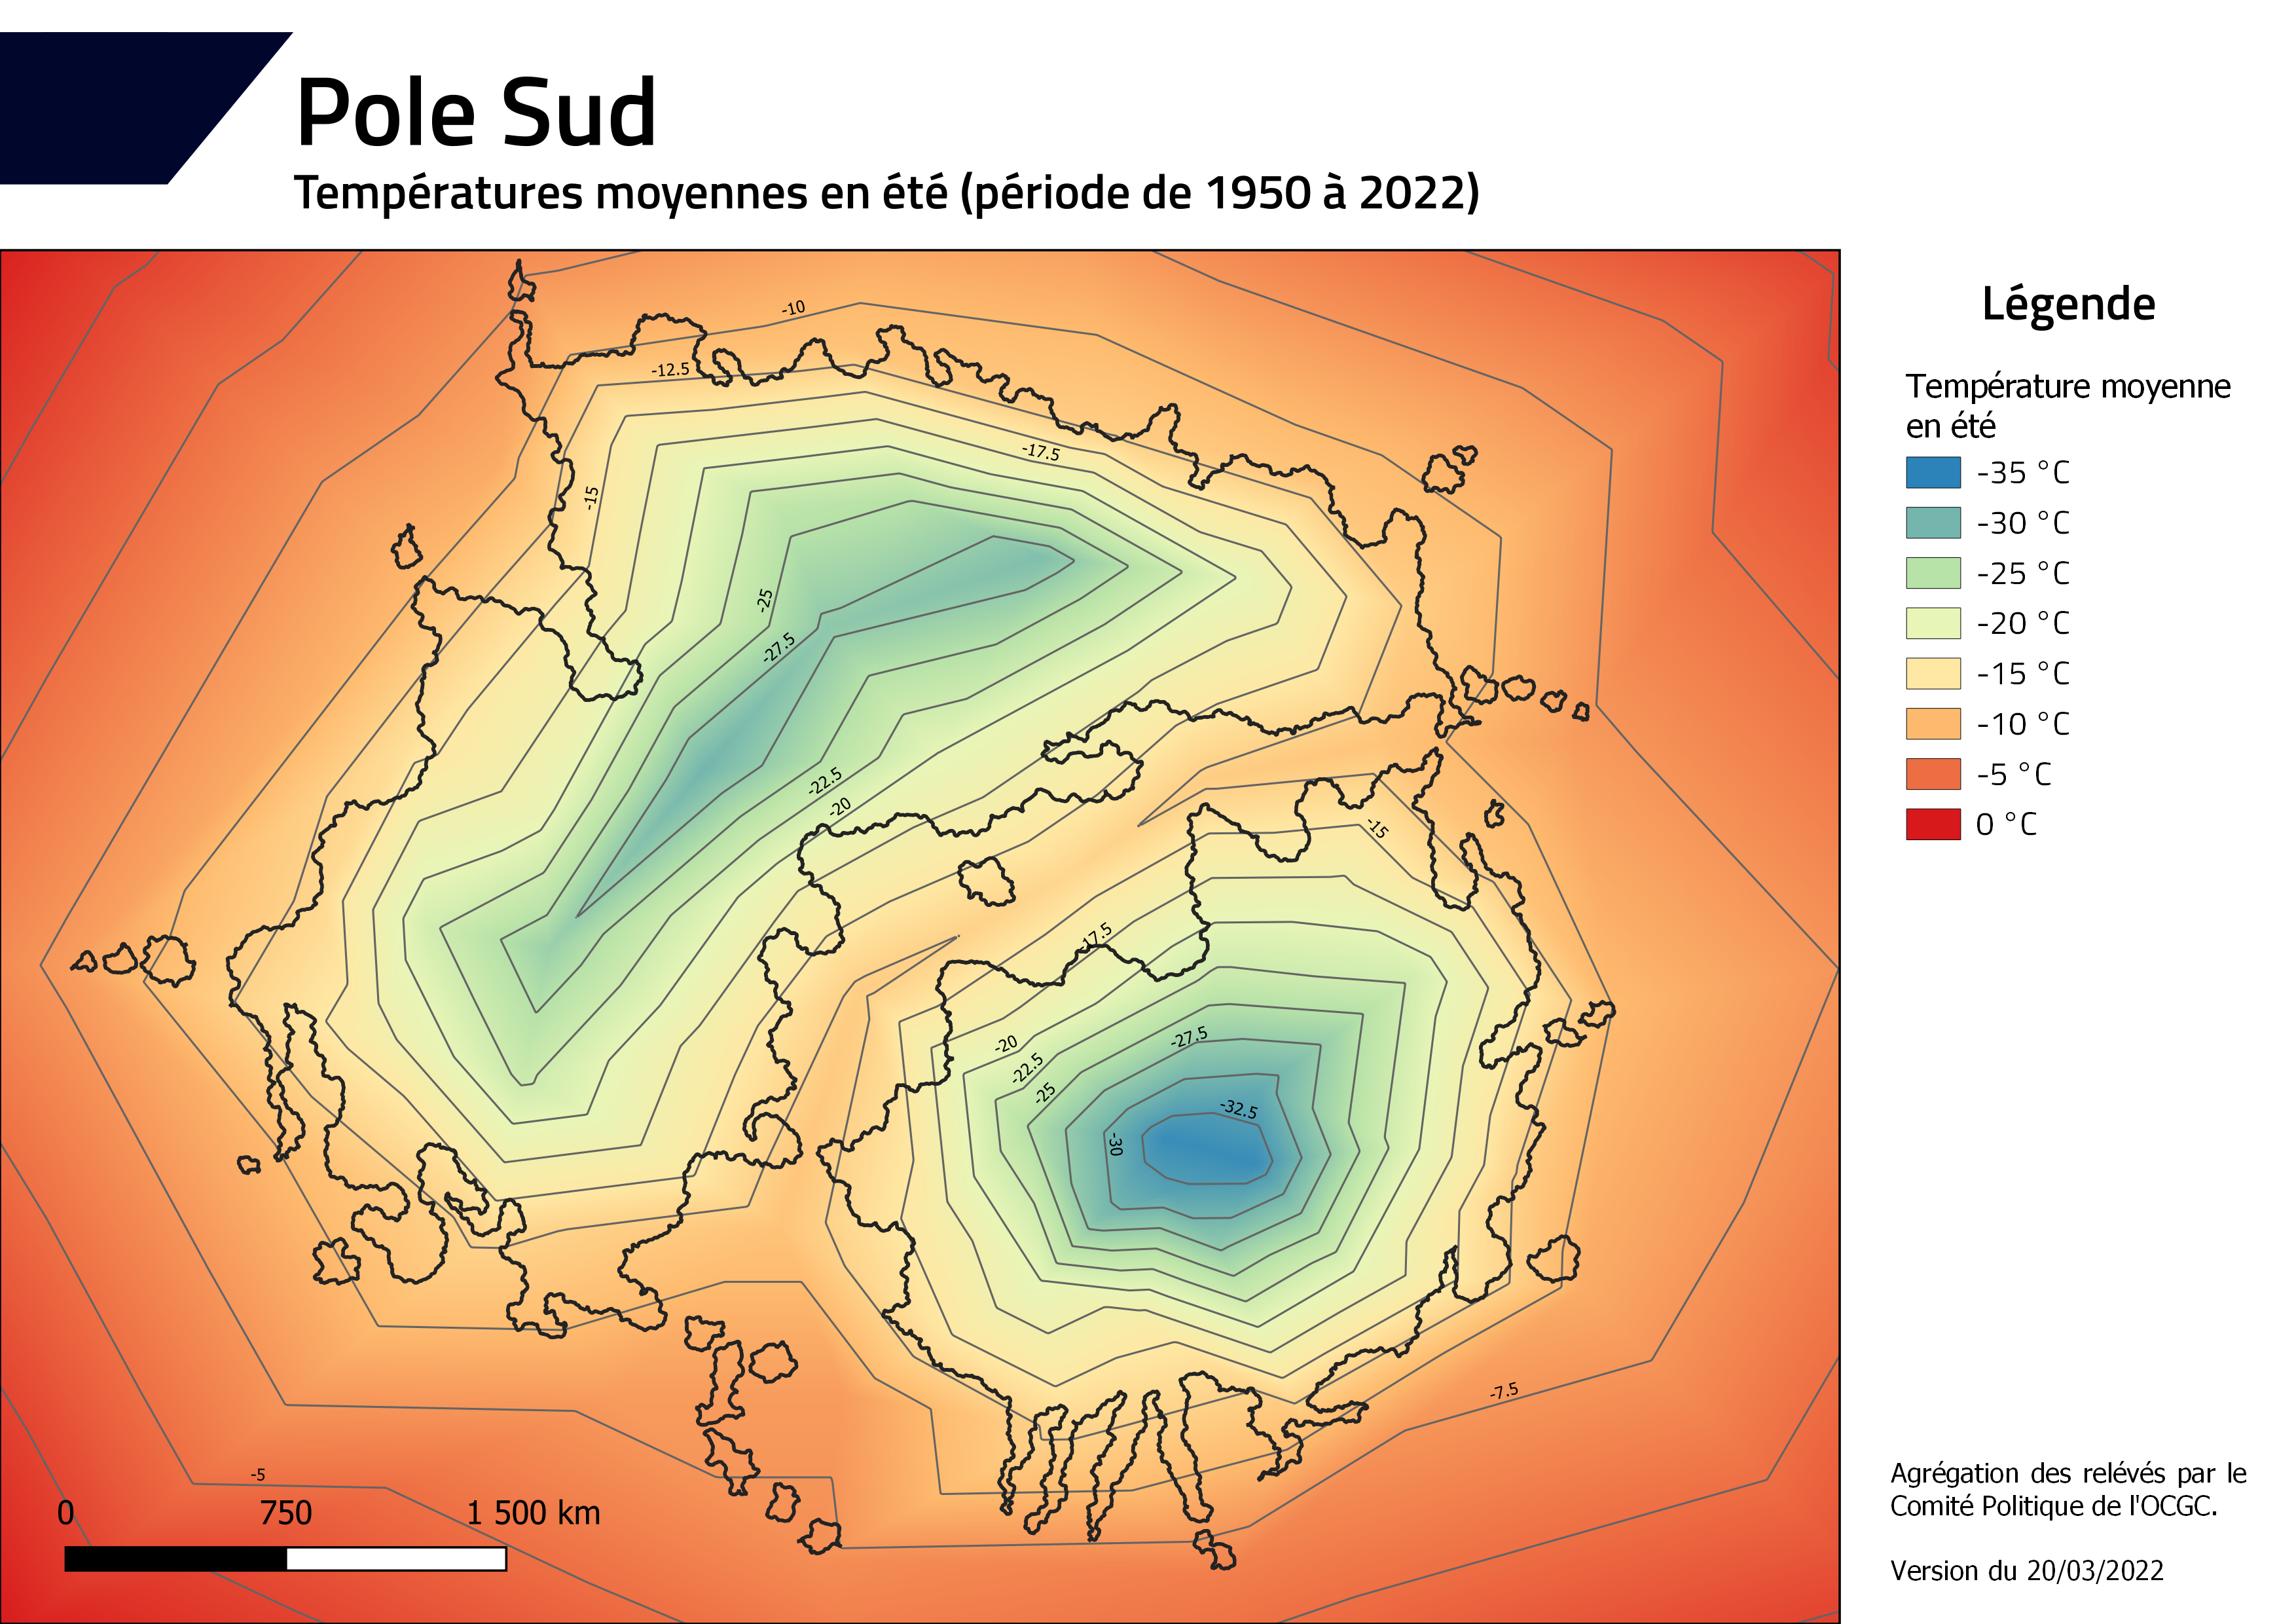 [RP - Poles] Les annonces : phase 3 - Page 6 PoleSud_temperature_ete